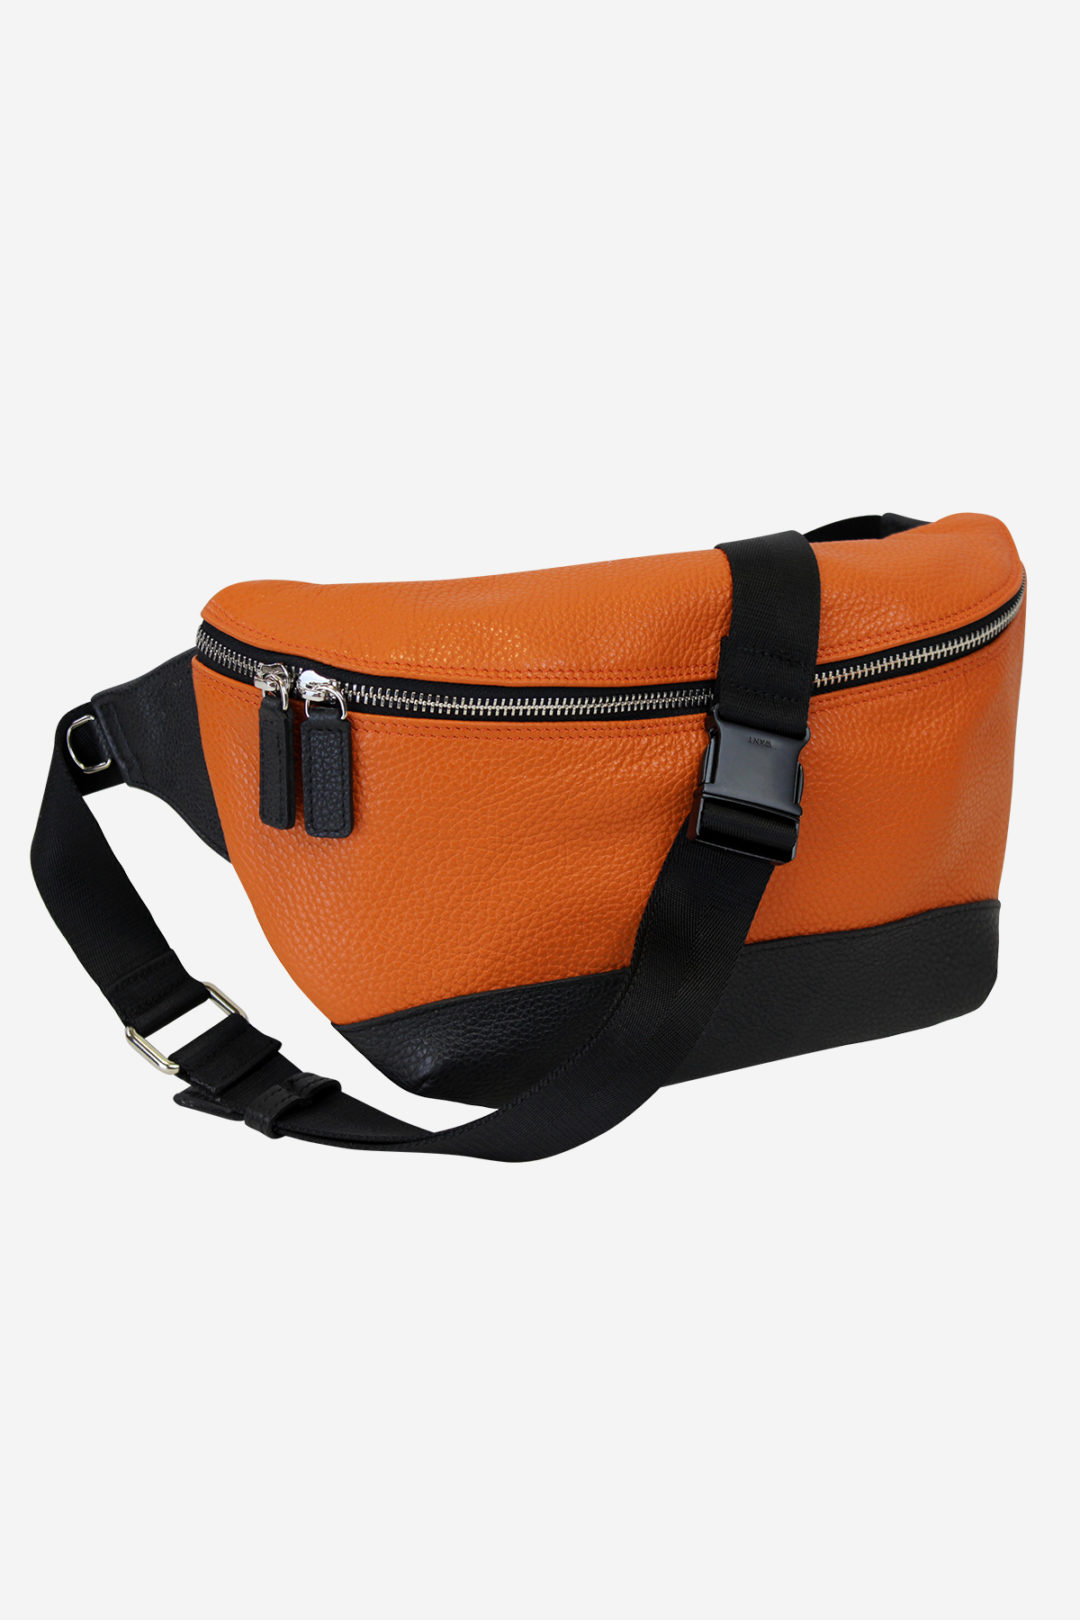 Modern Pouch orange leather waterproof